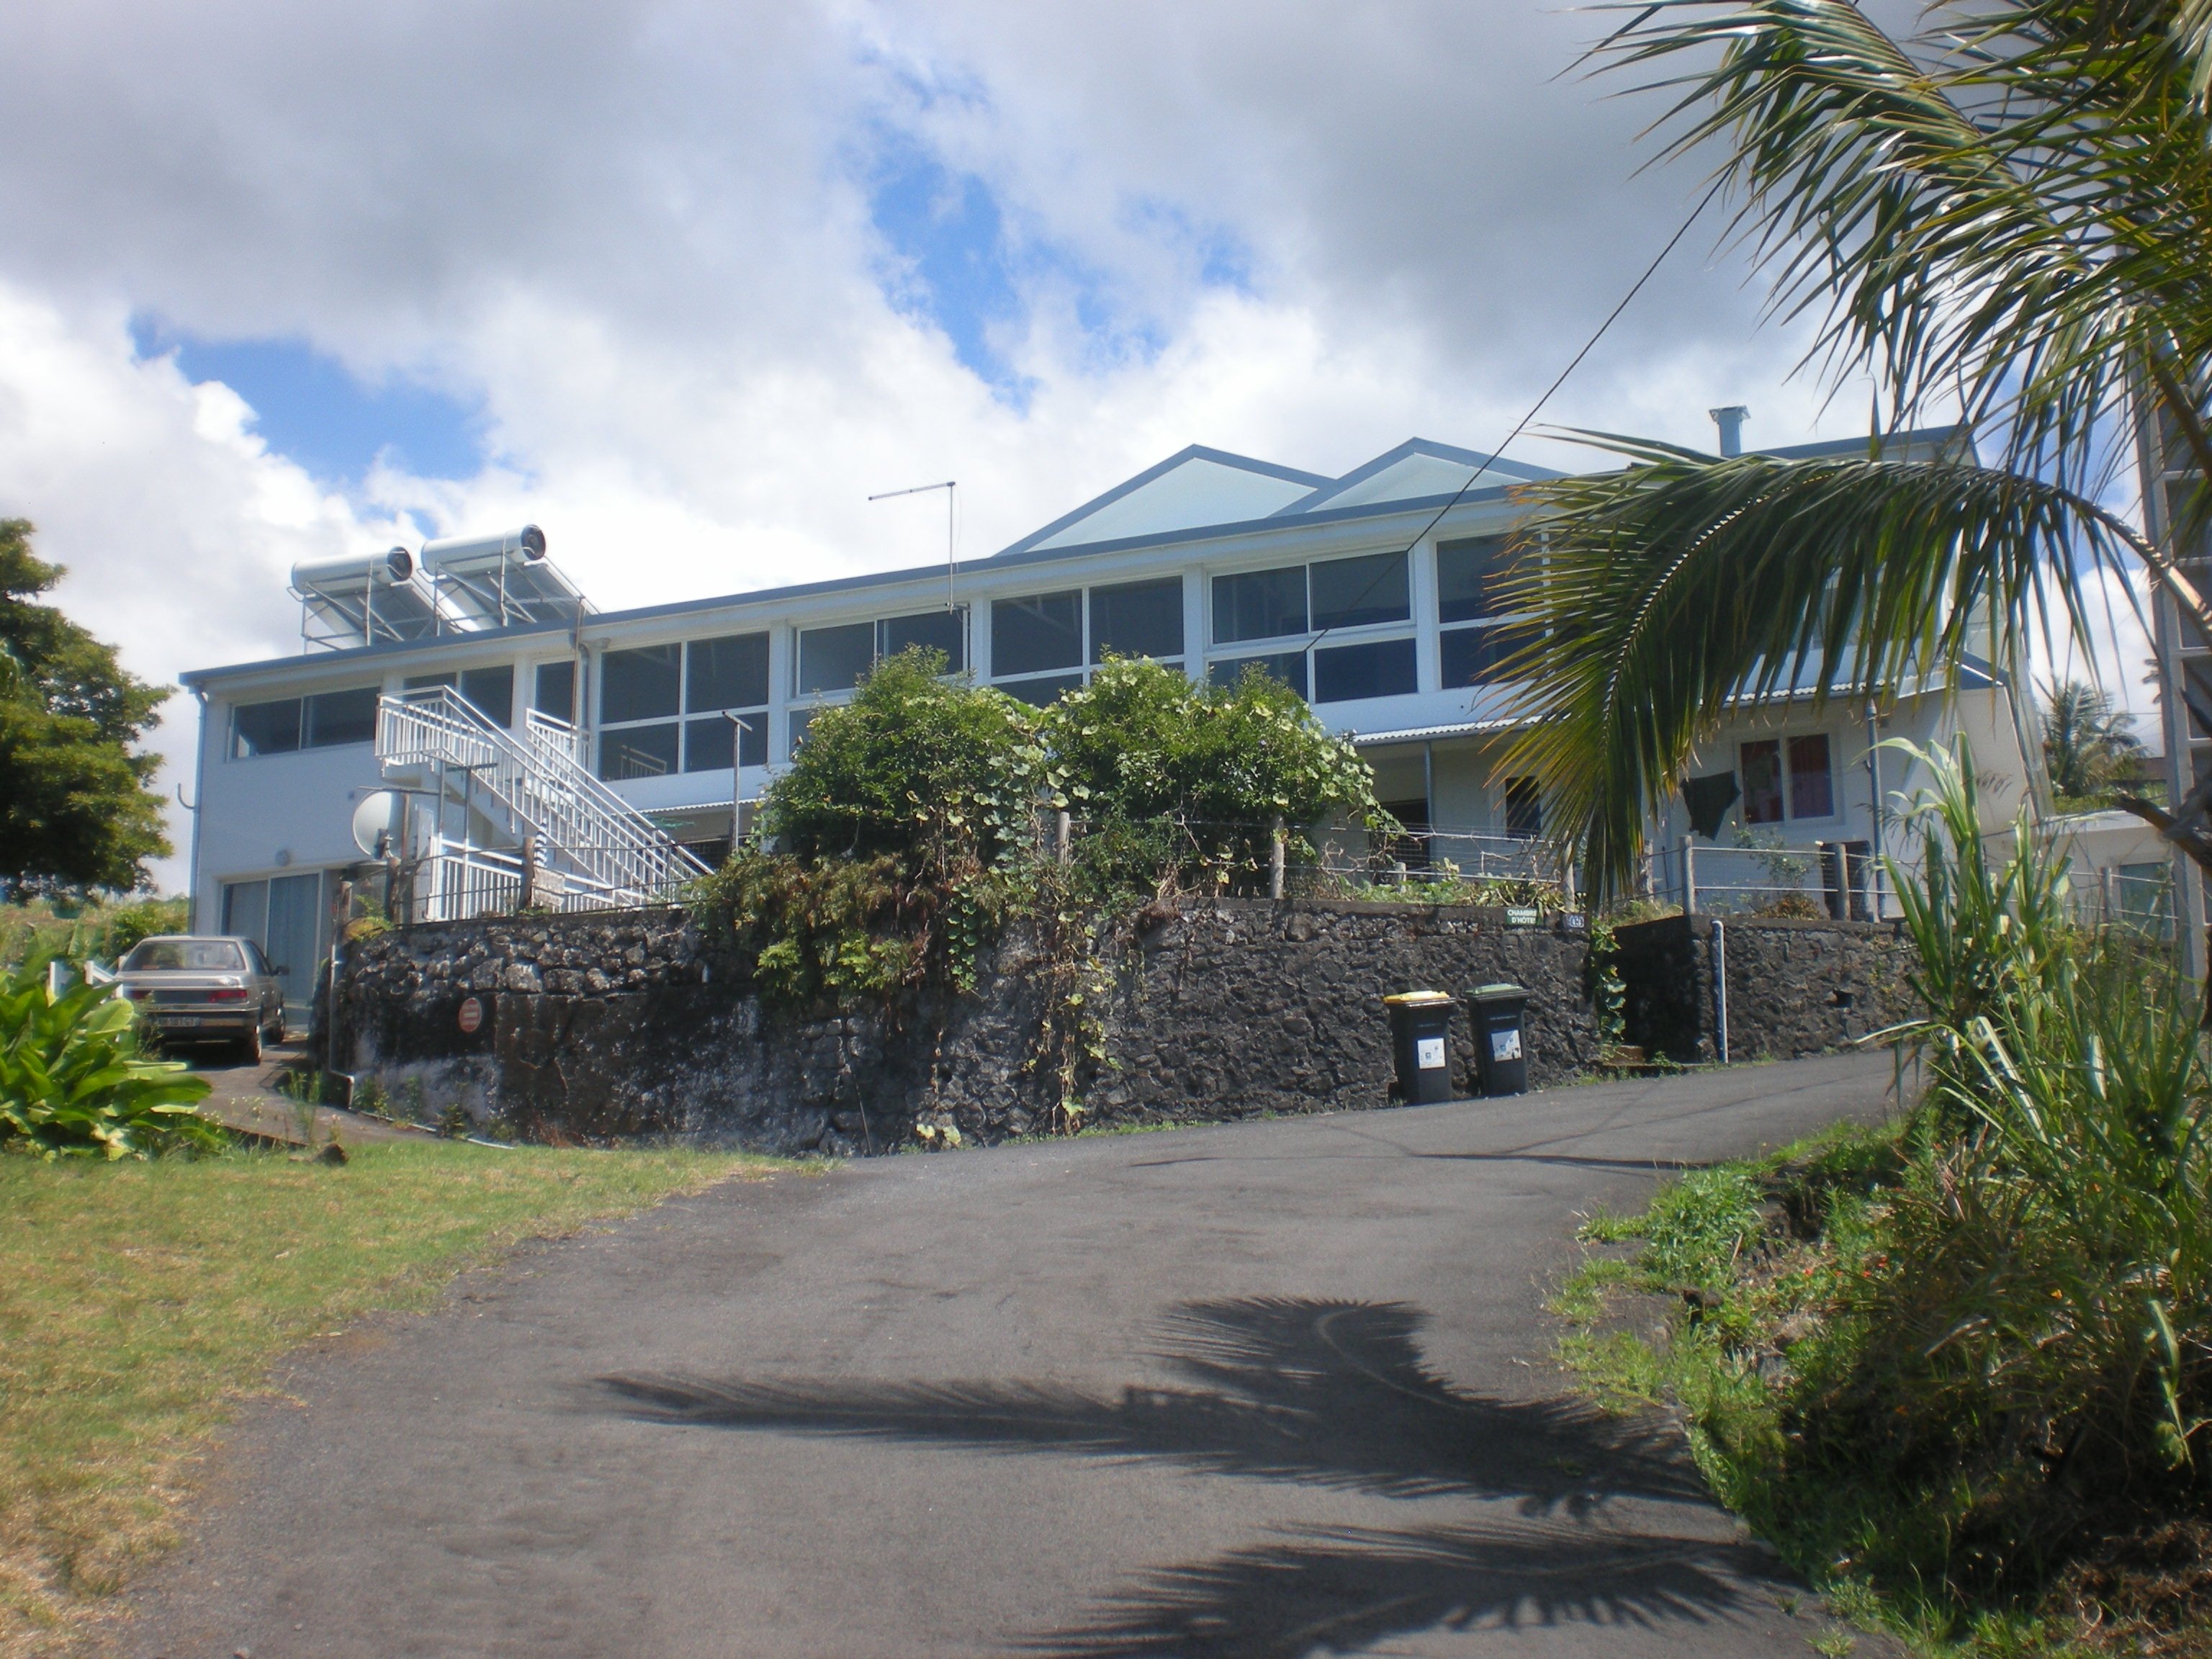 Vend petit immeuble à la Réunion (Saint-Joseph)